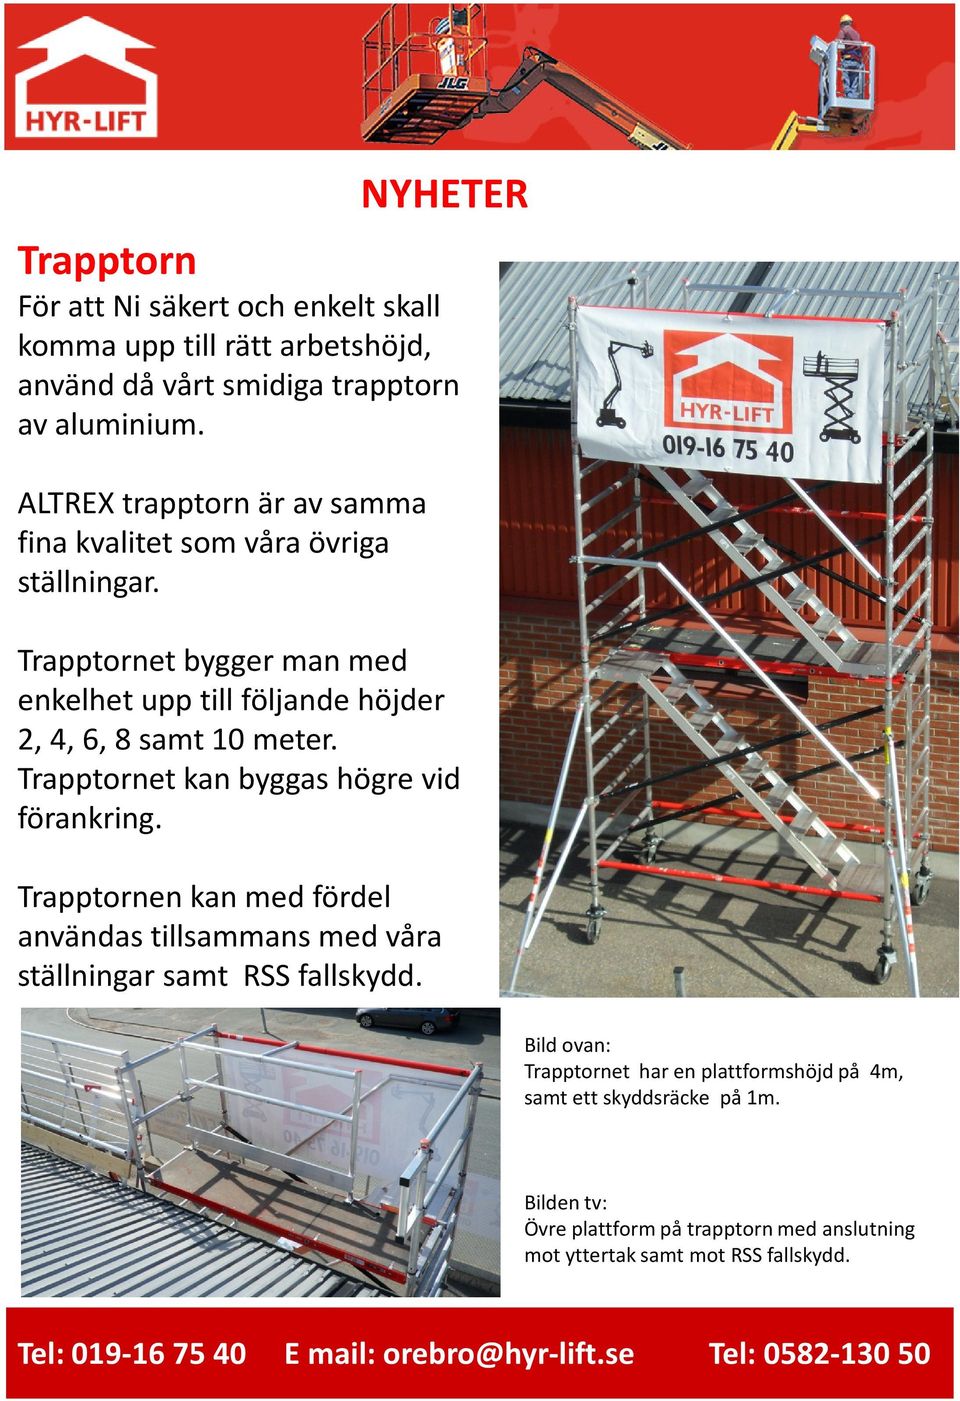 Trapptornet bygger man med enkelhet upp till följande höjder 2, 4, 6, 8 samt 10 meter. Trapptornetkan byggas högre vid förankring.